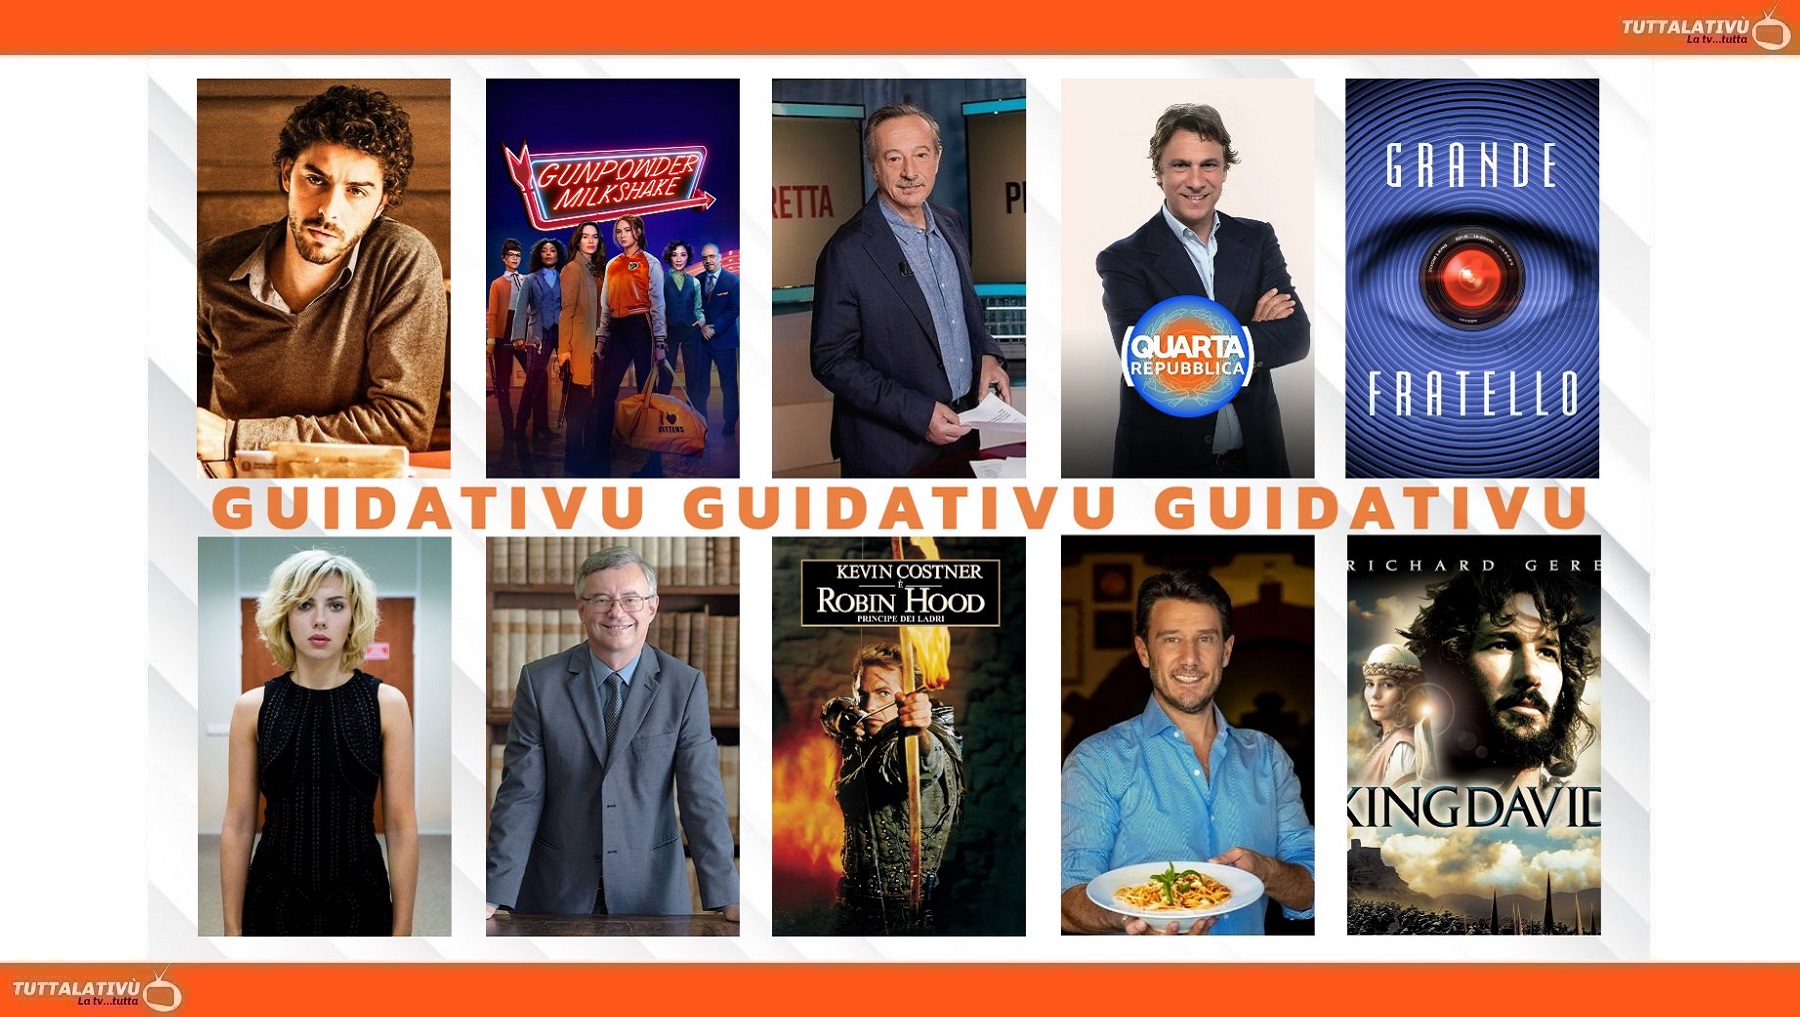 GuidaTV 11 Settembre 2023: Grande Fratello, Montalbano Jr., Presadiretta, Quarta Repubblica, In viaggio con Barbero, Robin Hood, King David